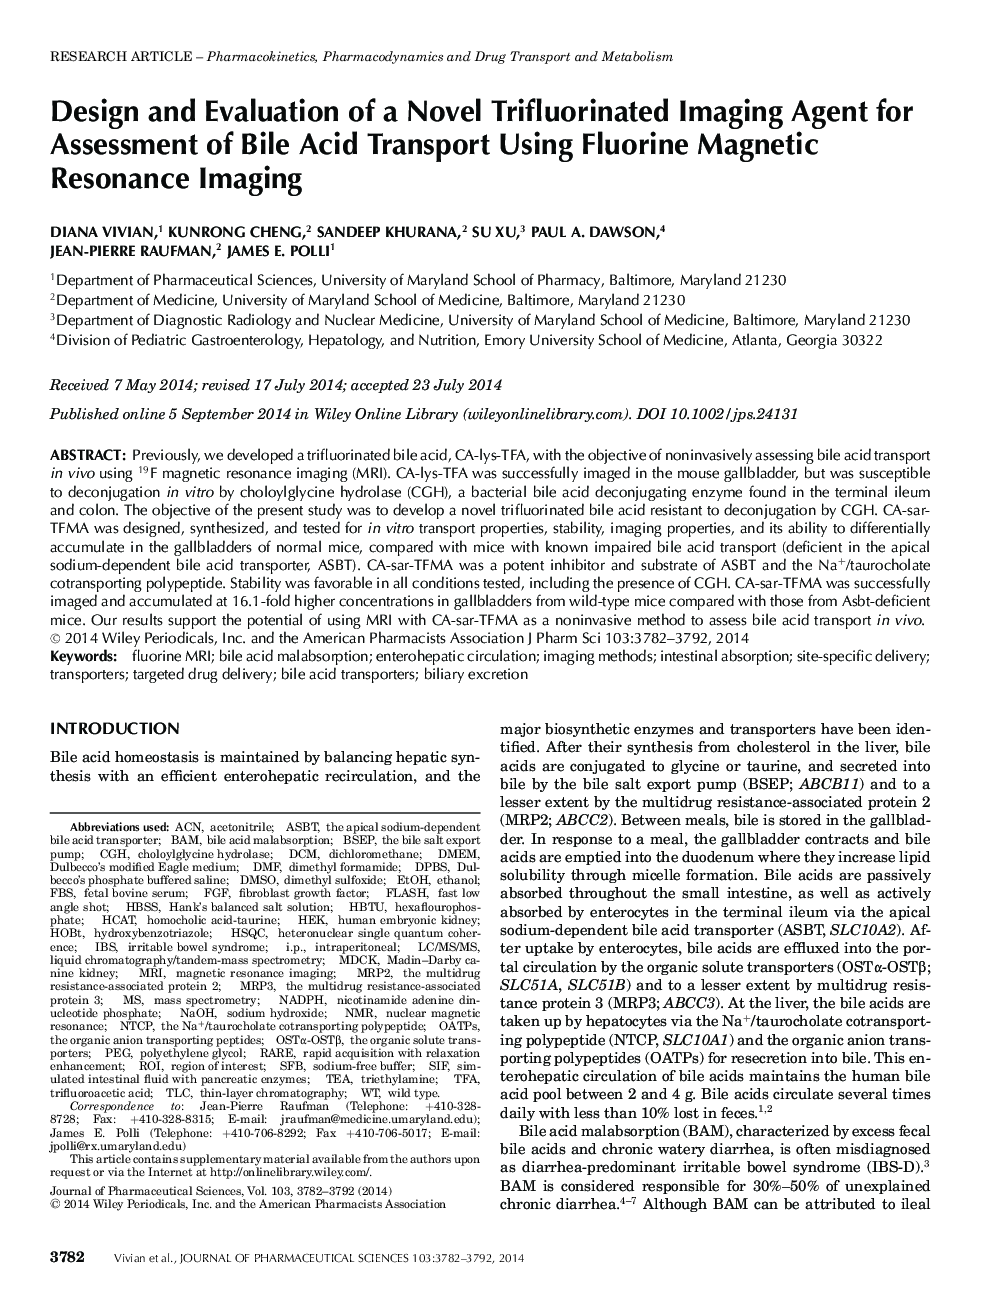 طراحی و ارزیابی نمایندگی تصویربرداری ریوی فلوئورینتینگ برای ارزیابی حمل و نقل اسید روغنی با استفاده از تصاویر رزونانس مغناطیسی فلورین 